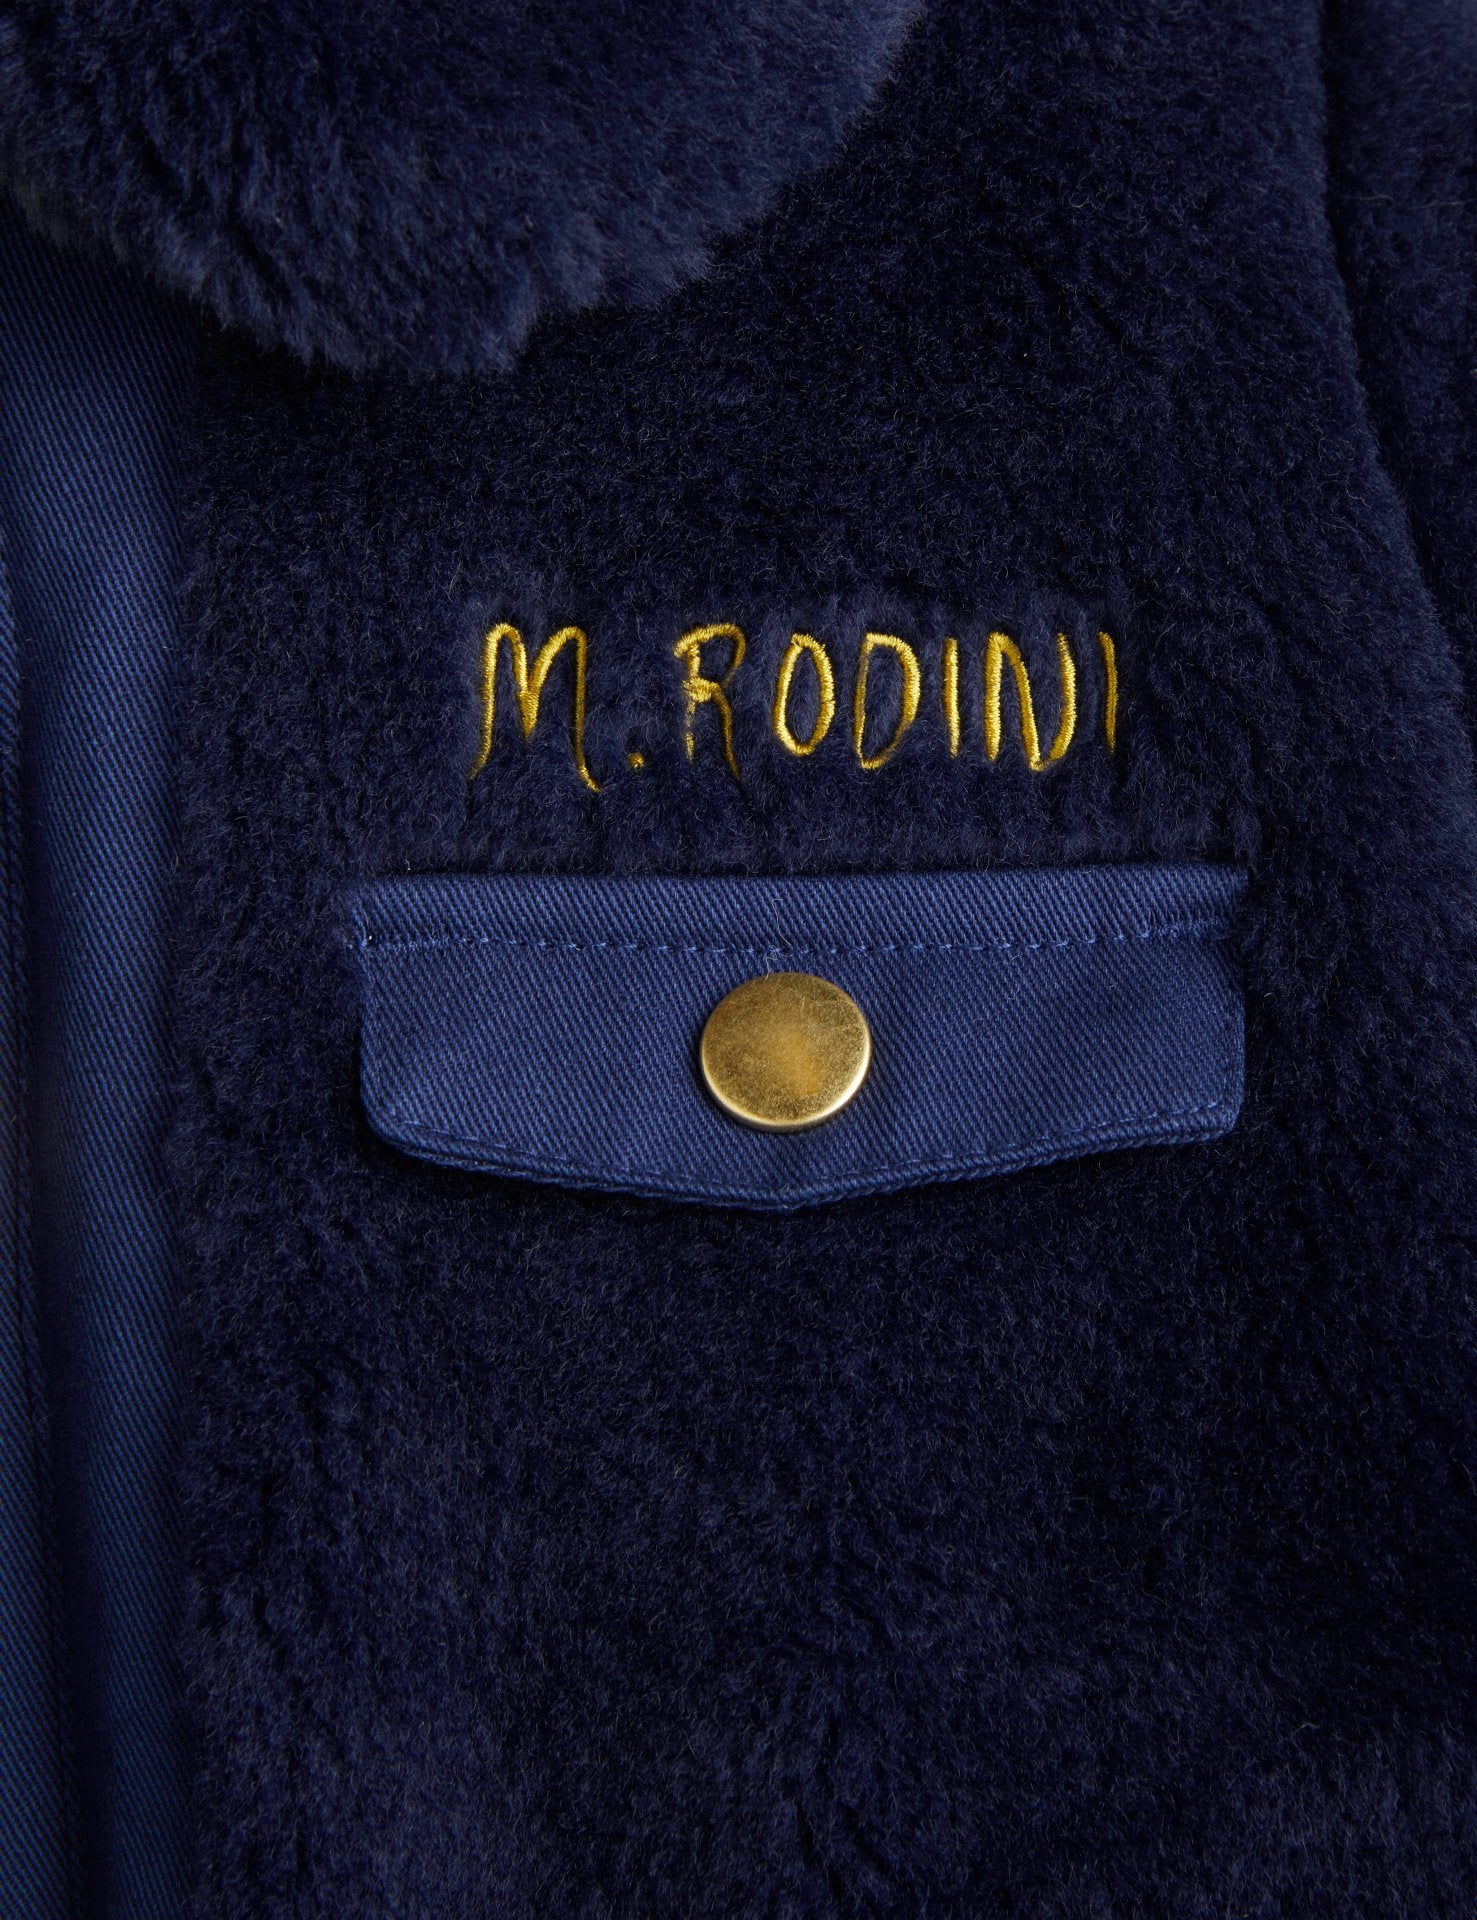 Mini Rodini Faux Fur Jacket - Navy